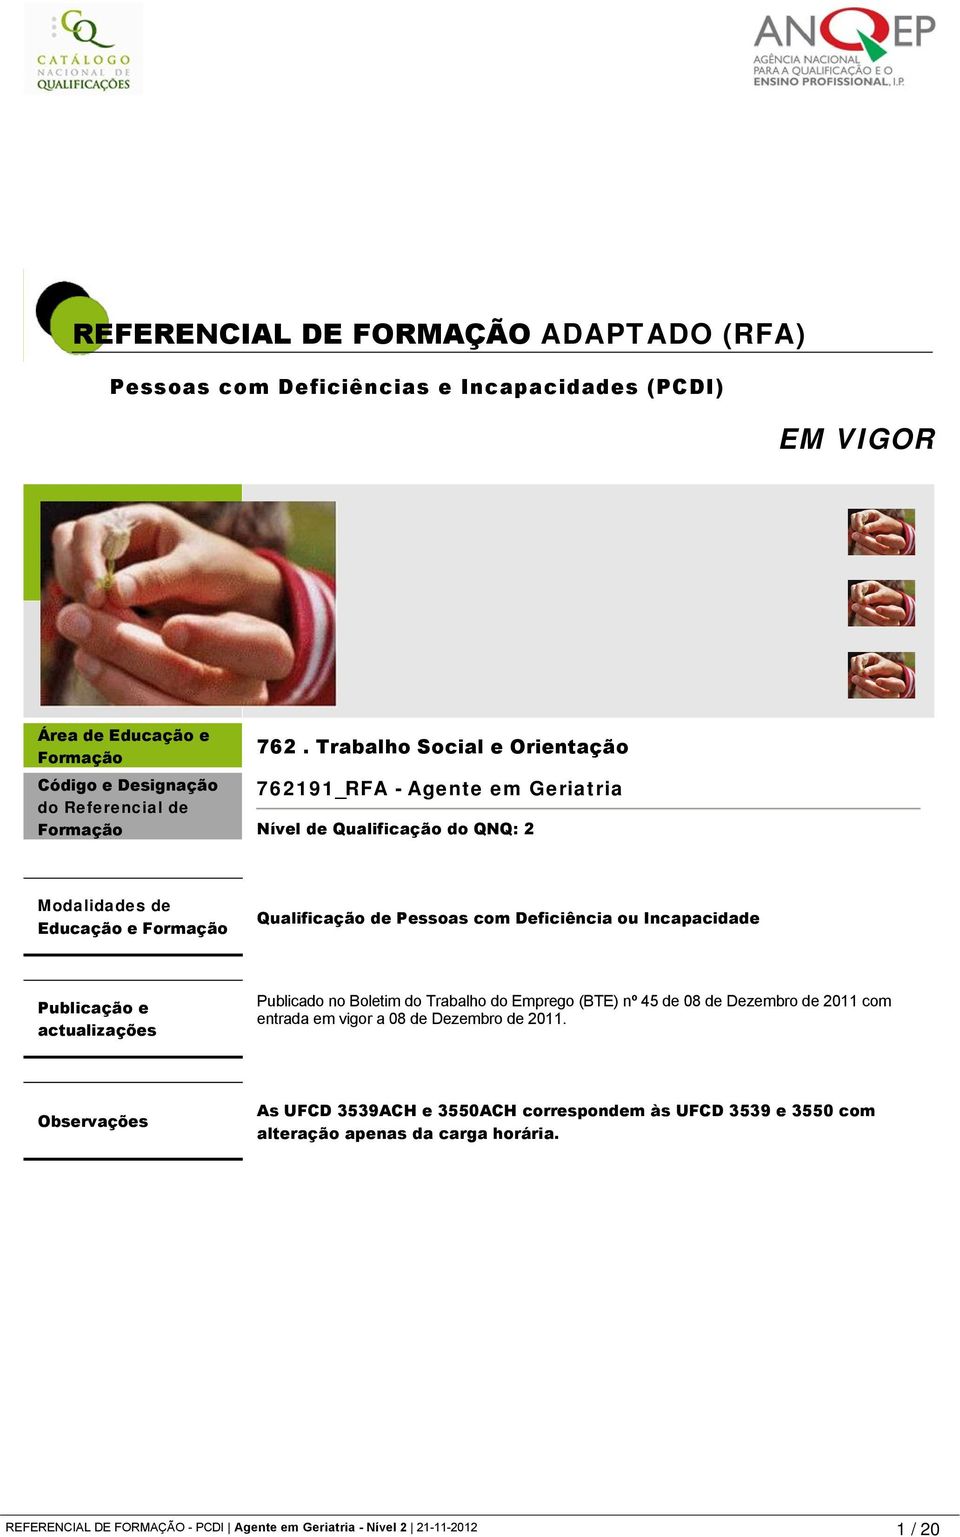 Incapacidade Publicação e actualizações Publicado no Boletim do Trabalho do Emprego (BTE) nº 45 de 08 de Dezembro de 2011 com entrada em vigor a 08 de Dezembro de 2011.